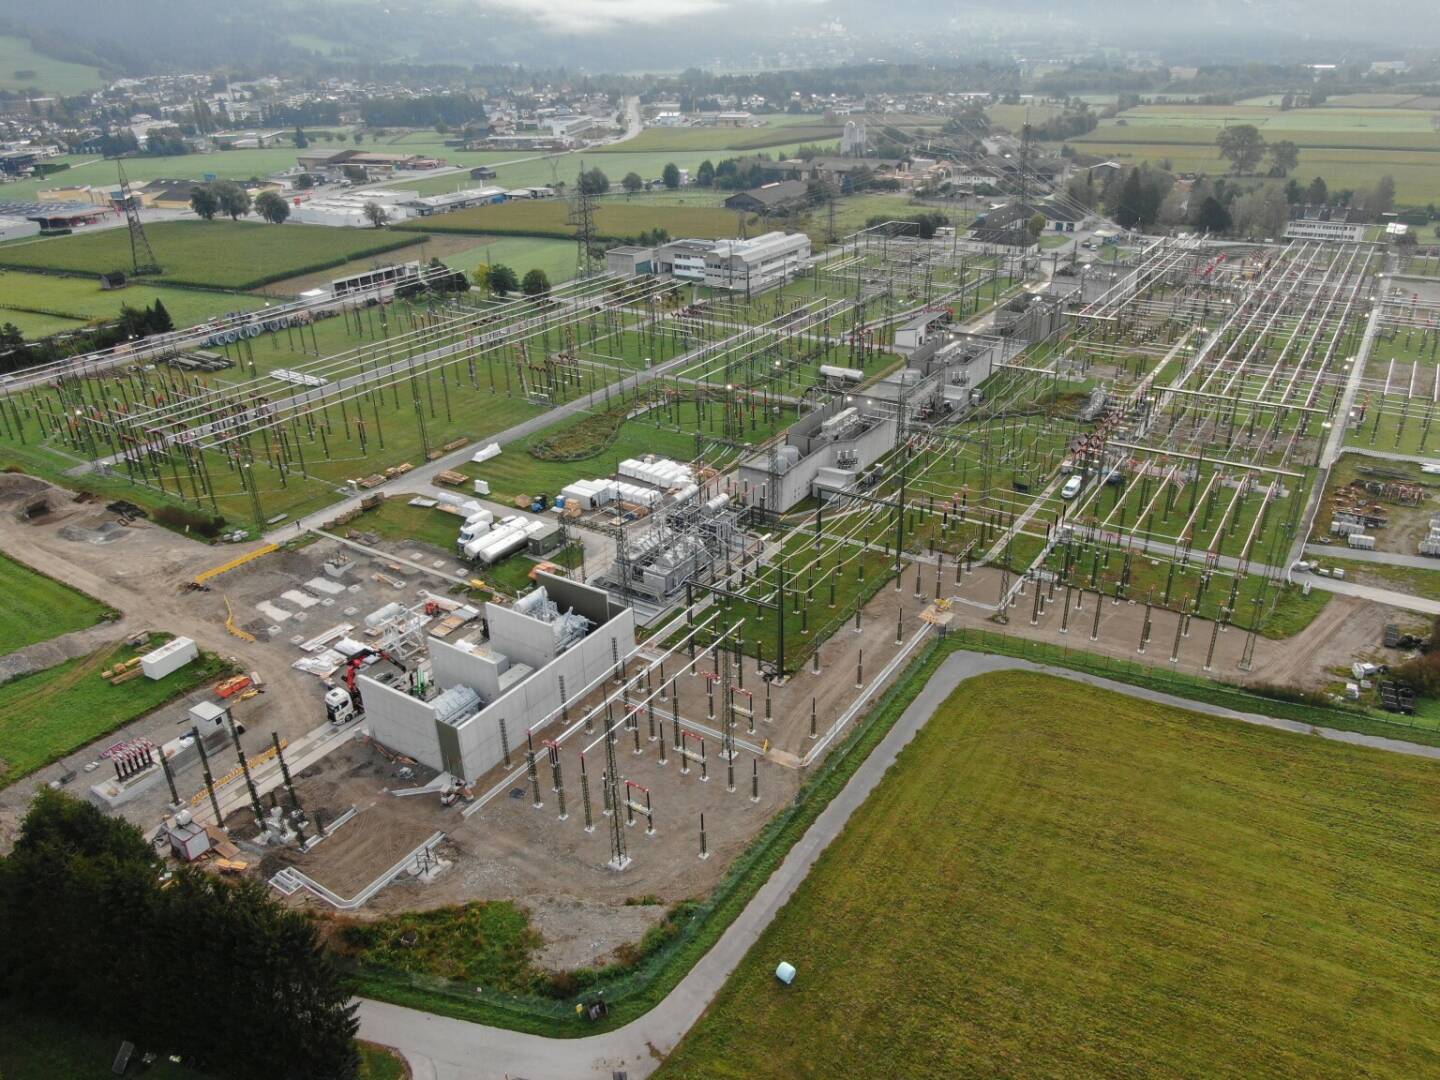 Austrian Power Grid AG: Das Umspannwerk Lienz ist der einzige Strom-Anspeisepunkt für ganz Osttirol aus dem österreichweiten 380/220-kV-Hochpsannungsnetz der APG und deshalb besonders wichtig für die Stromversorgung in der Region. Nach rund 60 Jahren Betriebsdauer sind Teile der Anlage sanierungsbedürftig. Seit Herbst 2016 wird daher schrittweise die 220-kV-Schaltanlage erneuert. im Bild: Umspannwerk Lienz von oben, Credit: APG/Inhöger